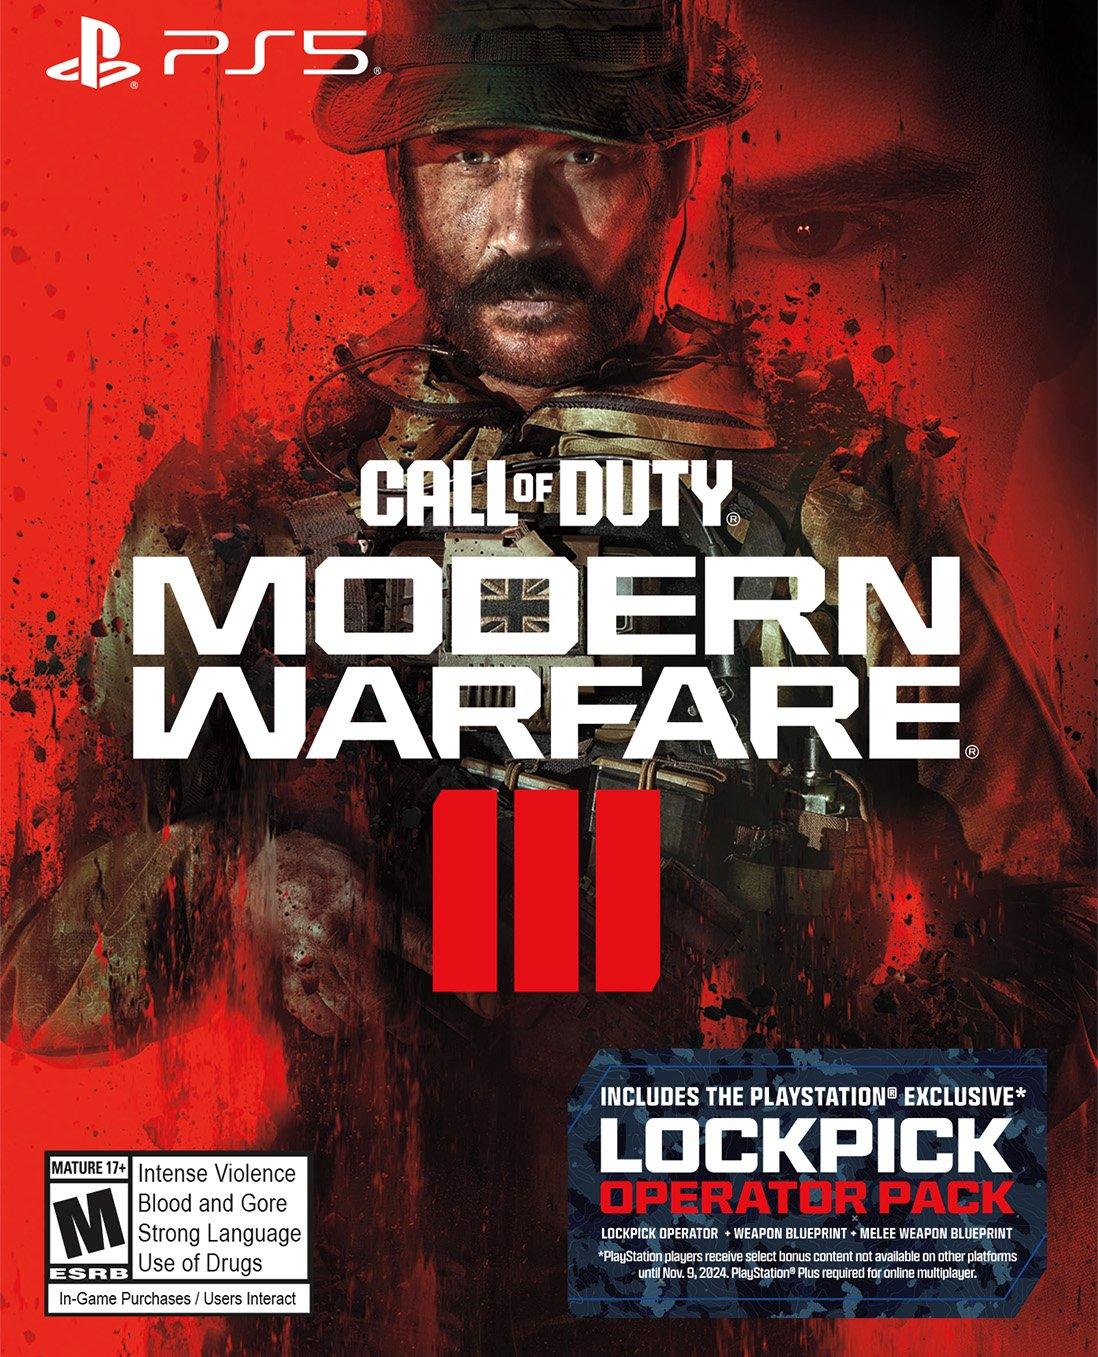 PlayStation 5 Disc Console - Call of Duty Modern Warfare II Bundle 